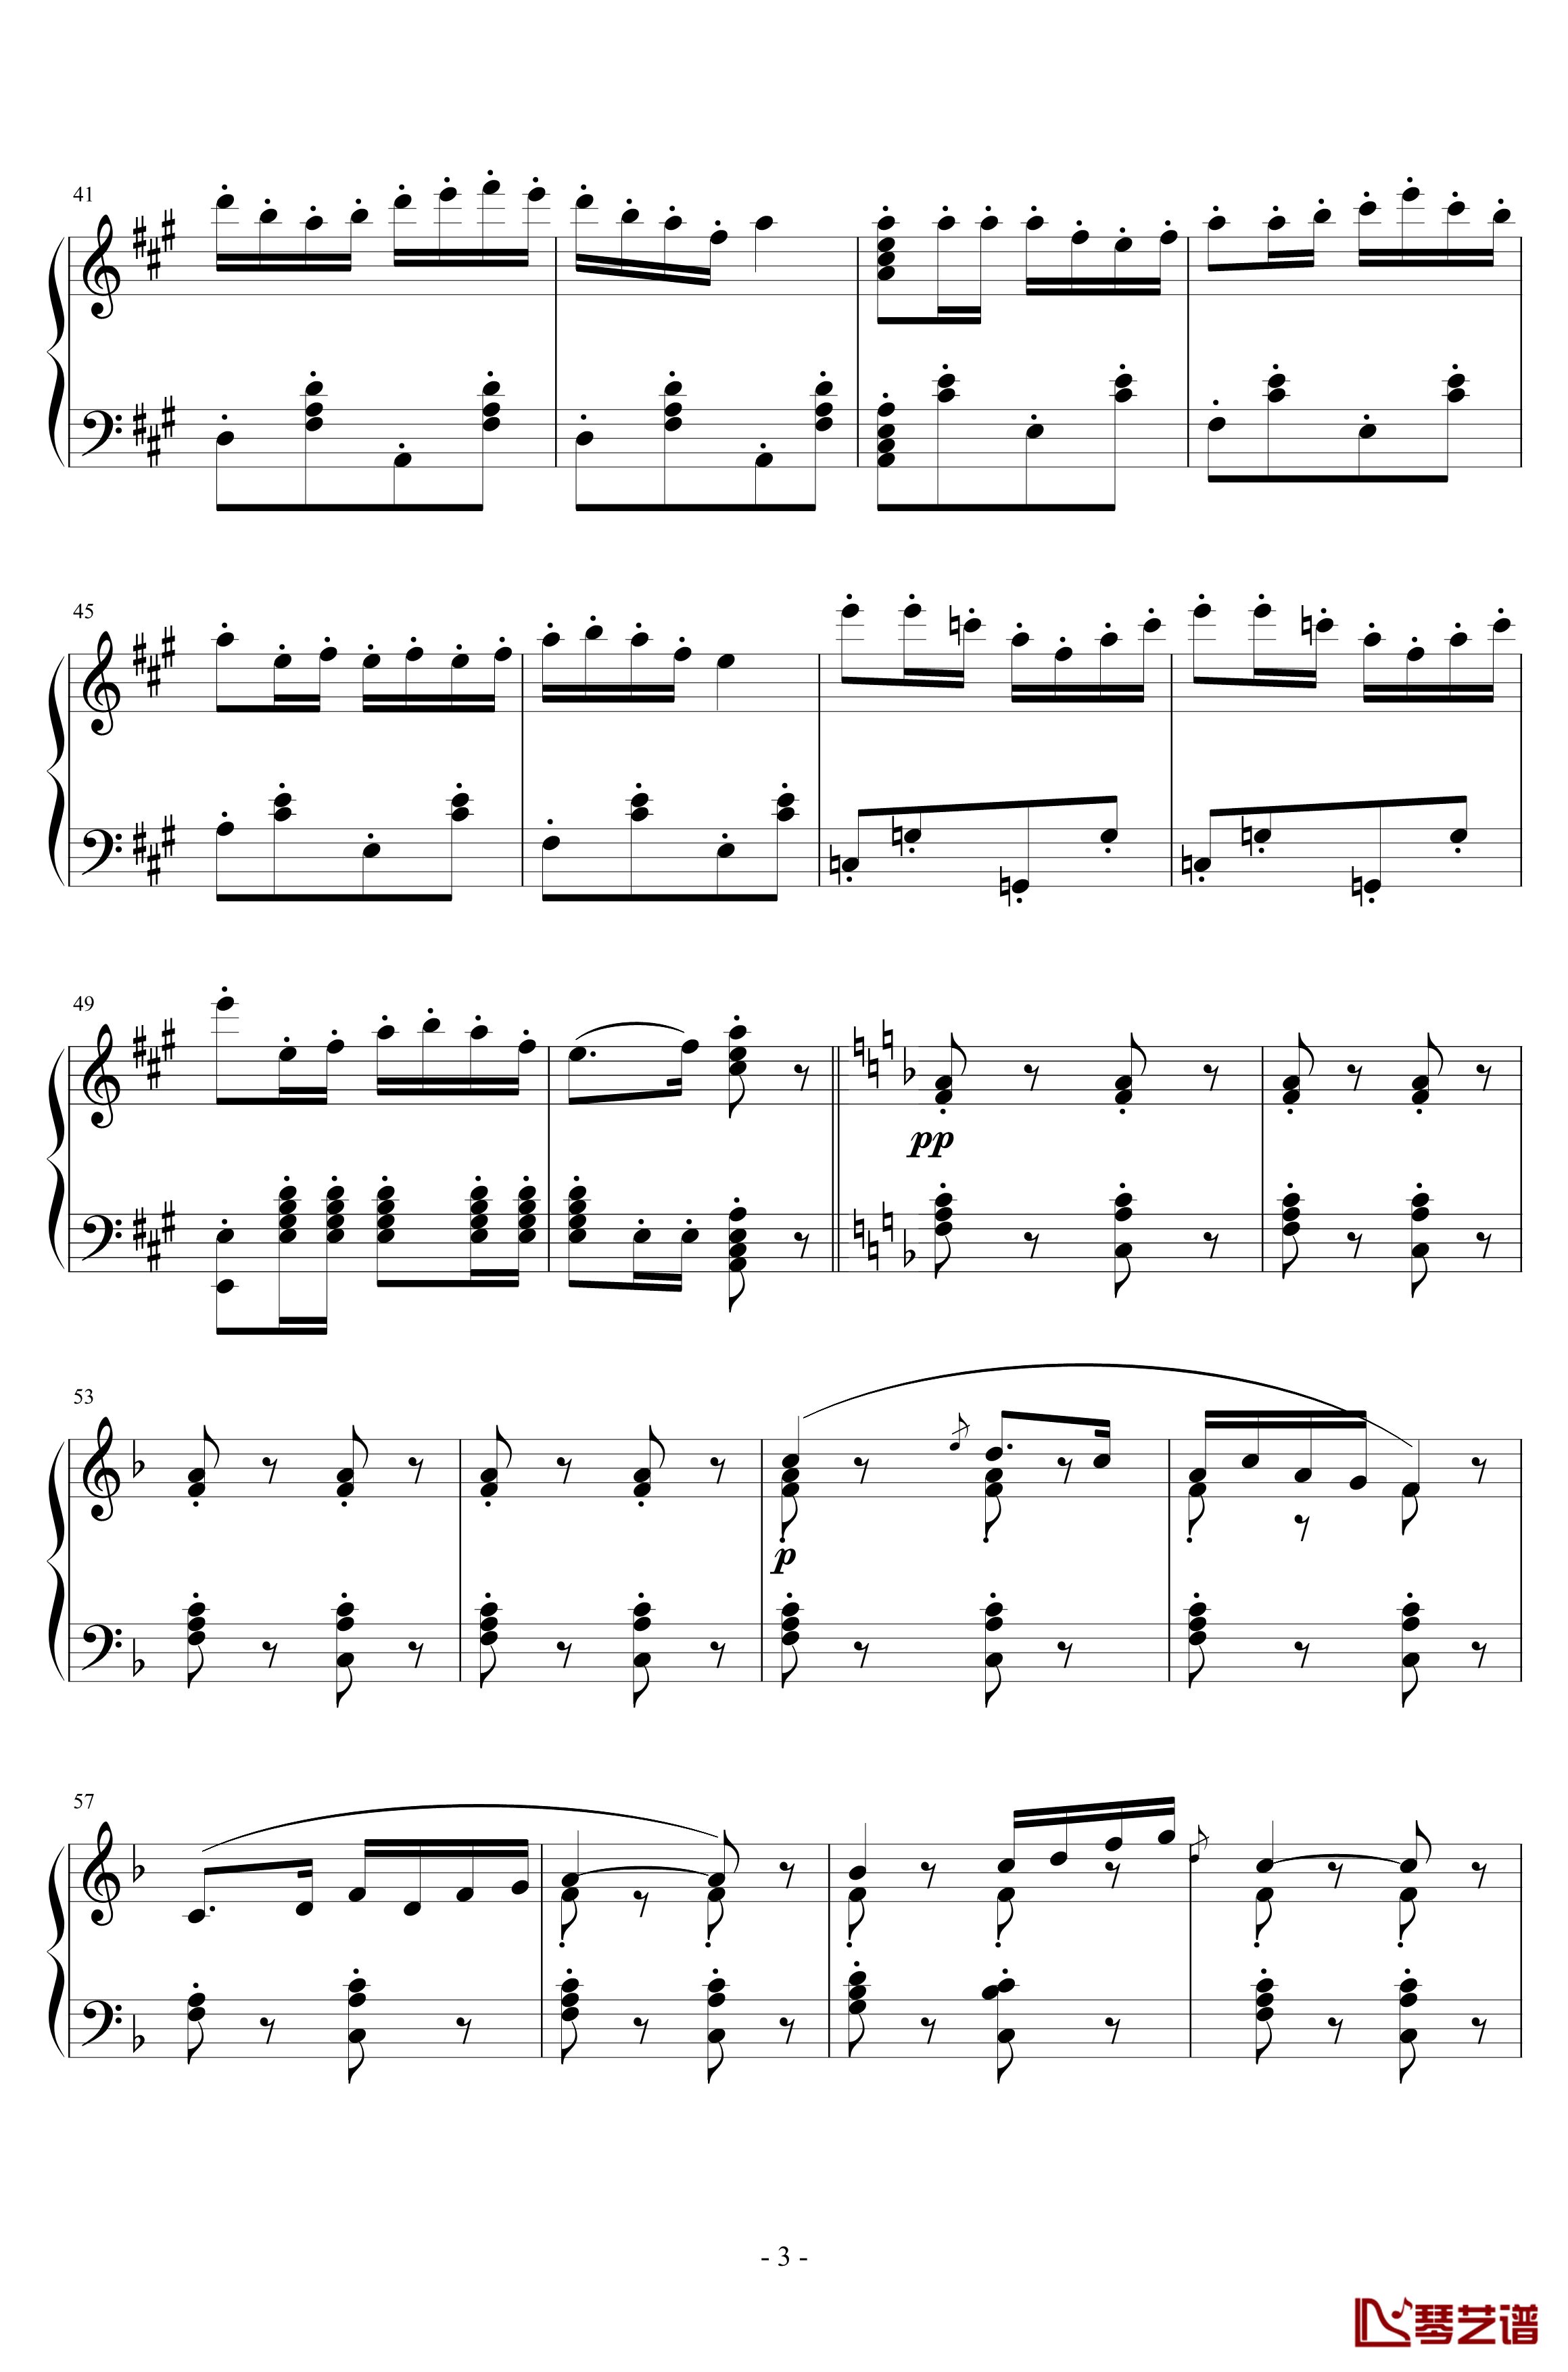 卡门序曲钢琴谱-朝鲜风格-比才-Bizet3